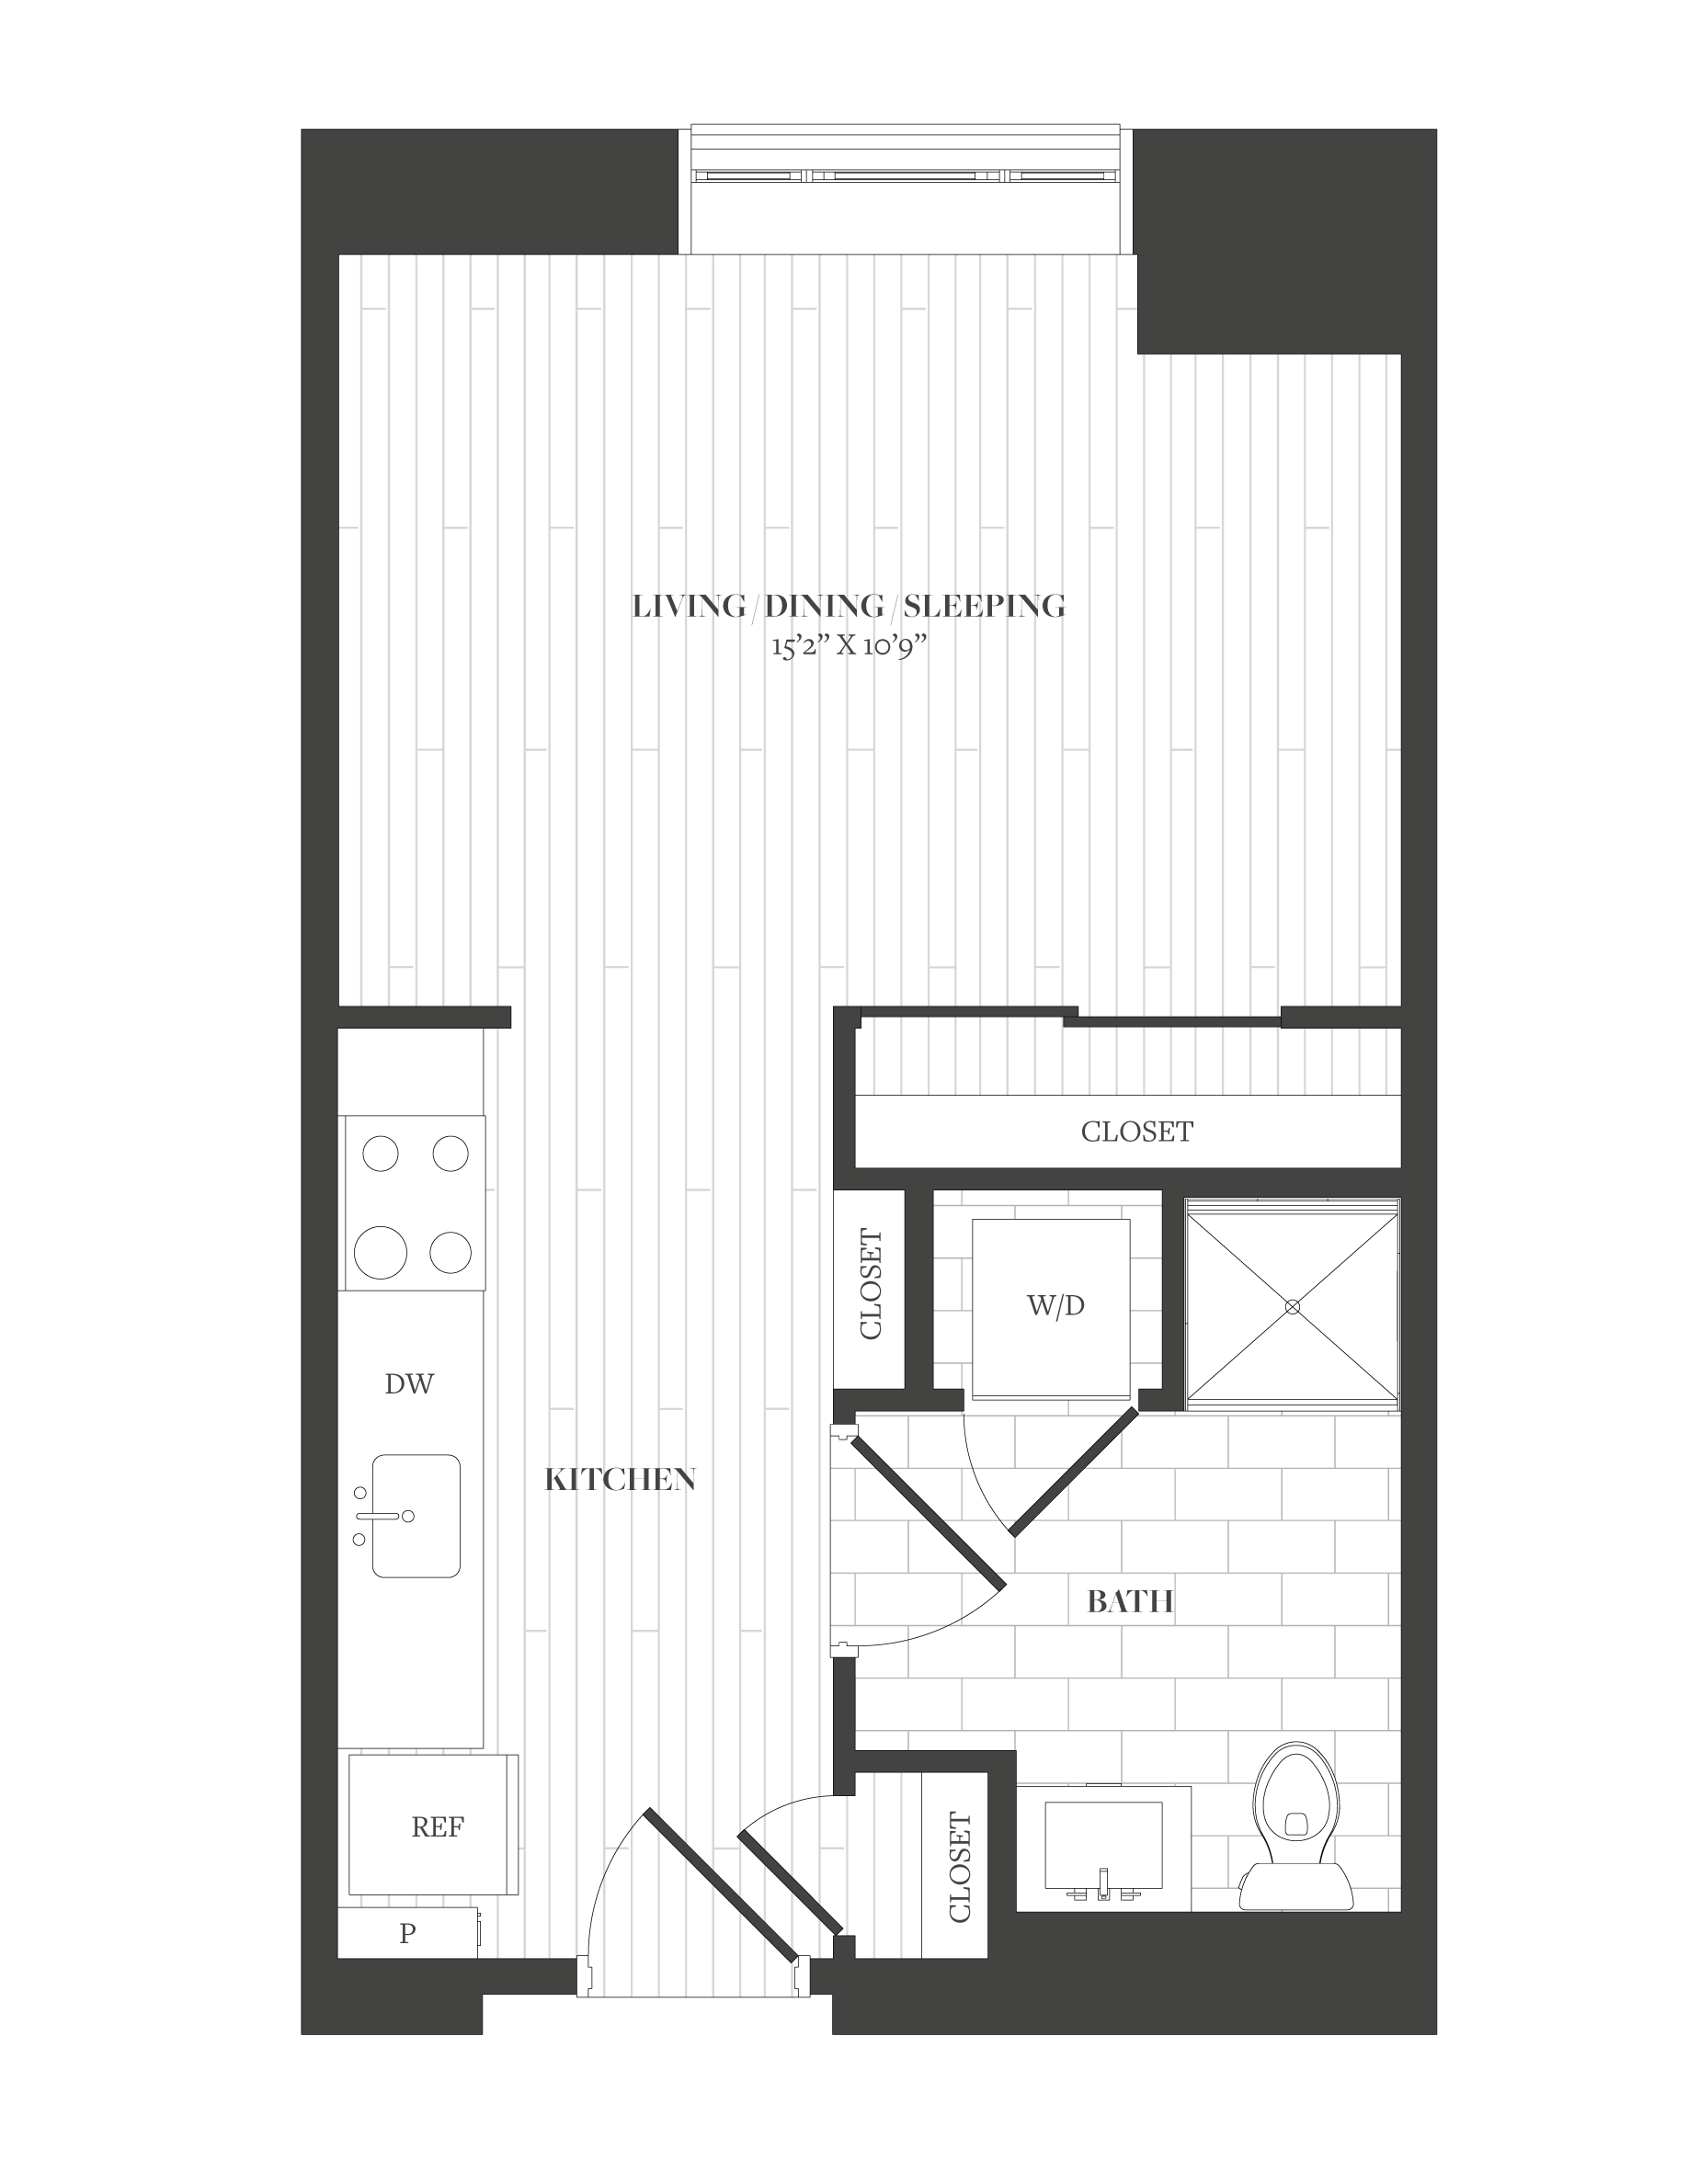 Floorplan image of unit 206